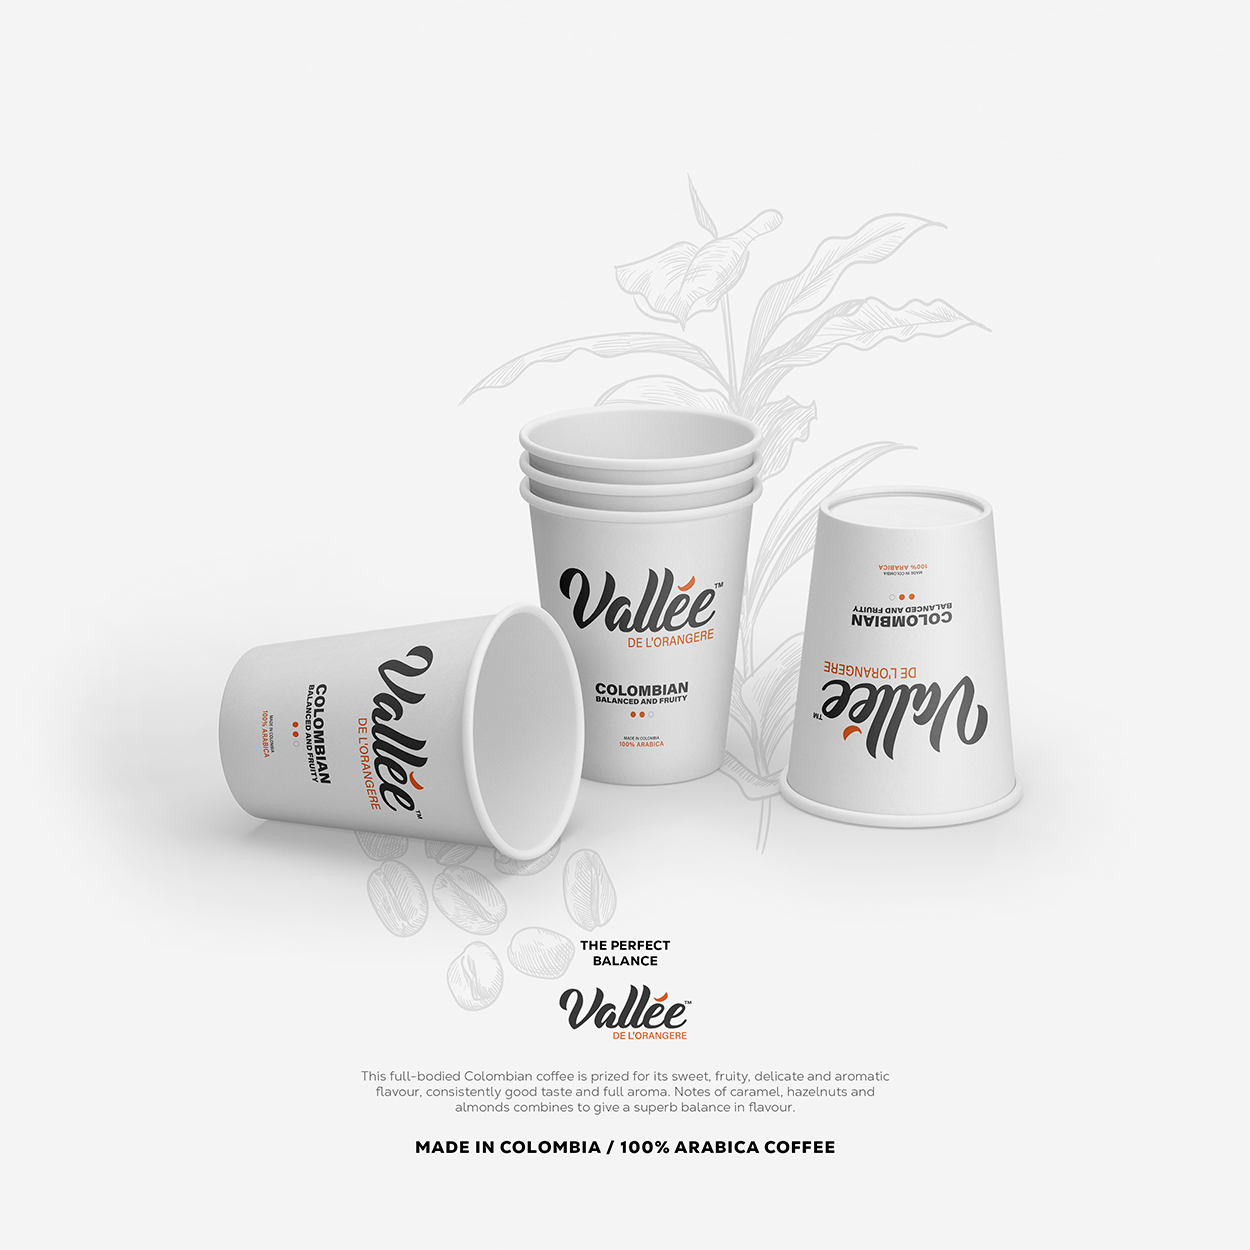 Vallee De'Lorangere Coffee Cup Design & Branding UK England